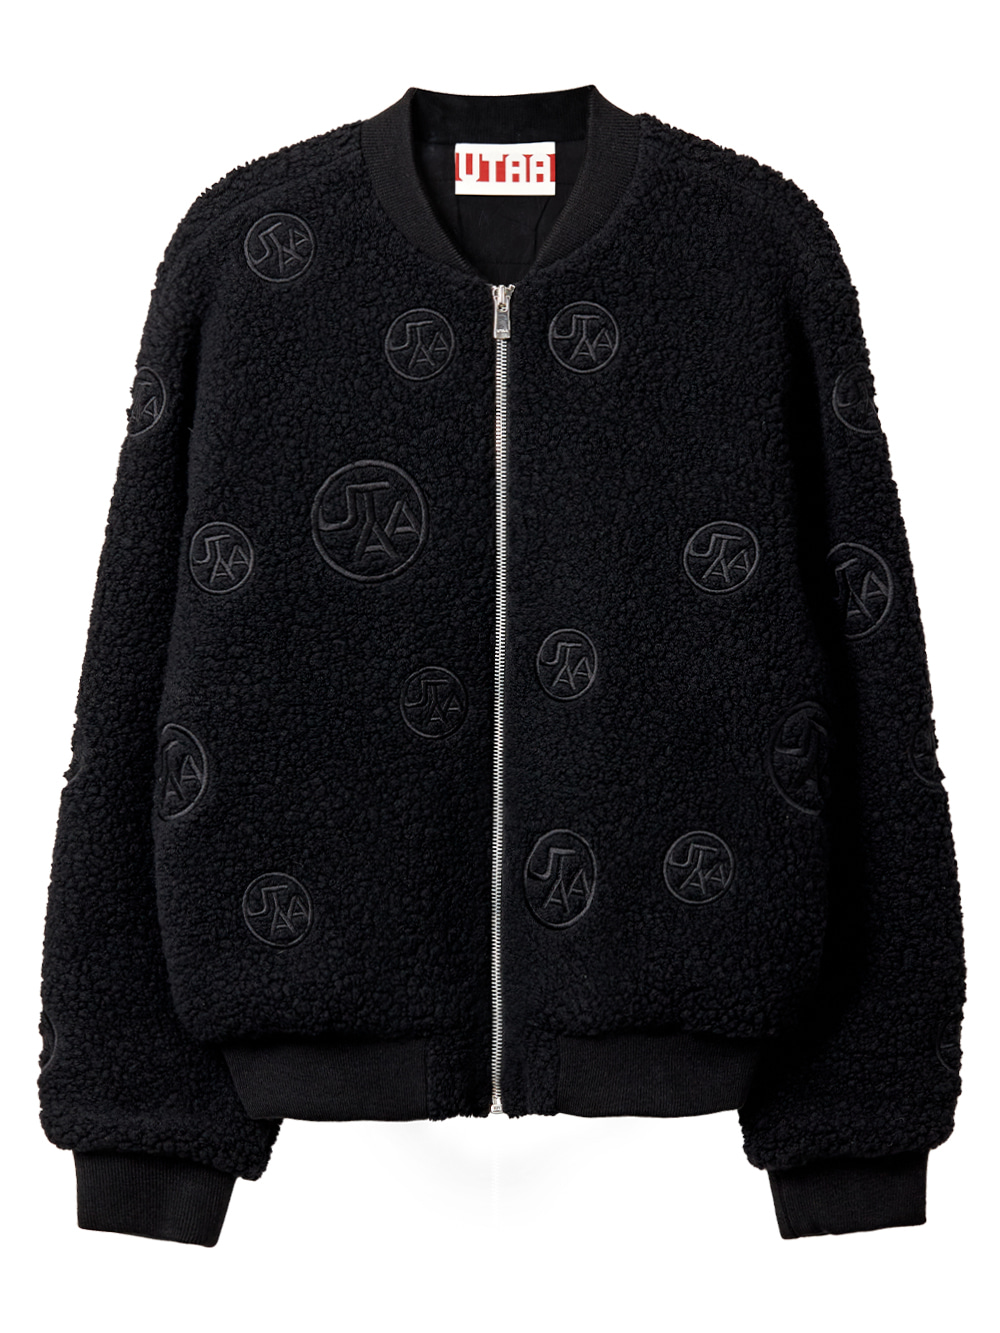 UTAA Polka Dot Emblem Fleece Jacket : Womens (UA4JPF583BK)